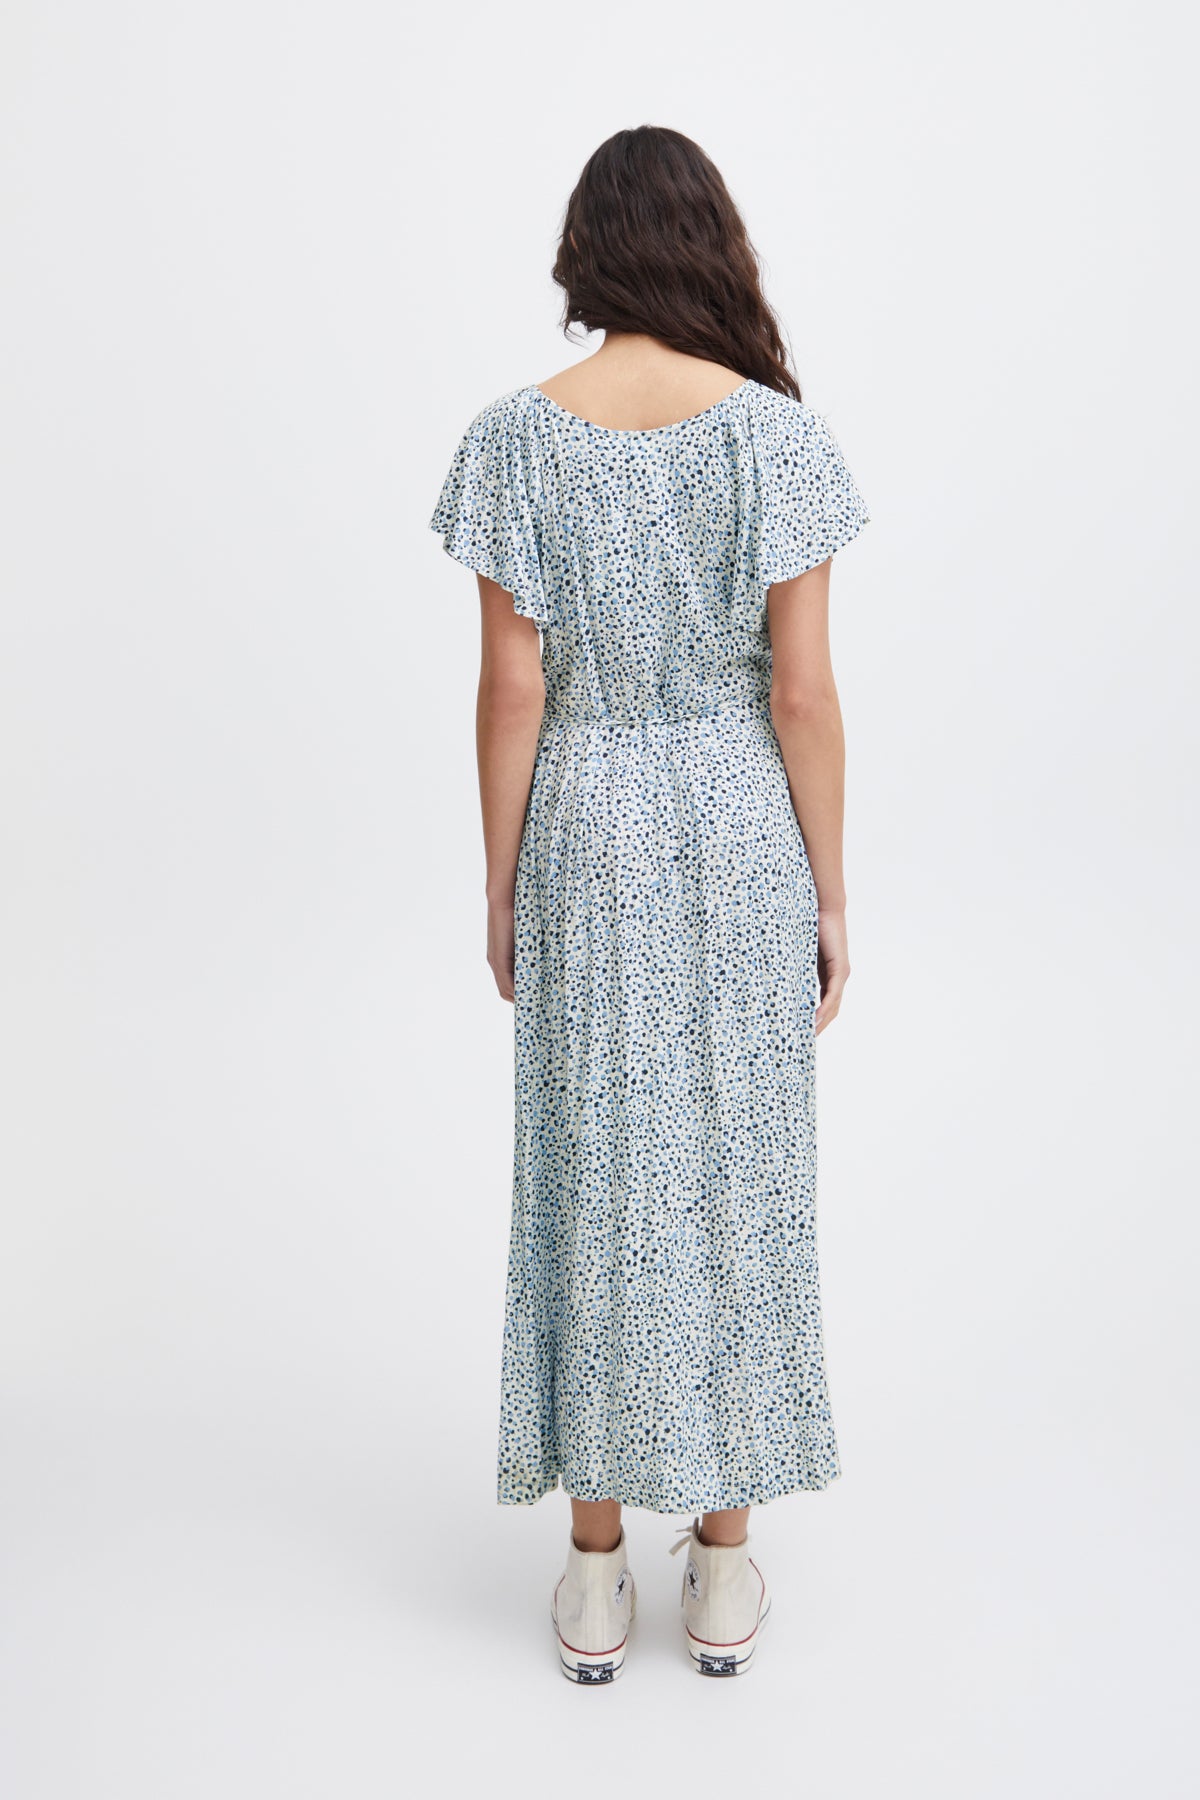 Aya Dress in Della Robbia Blue